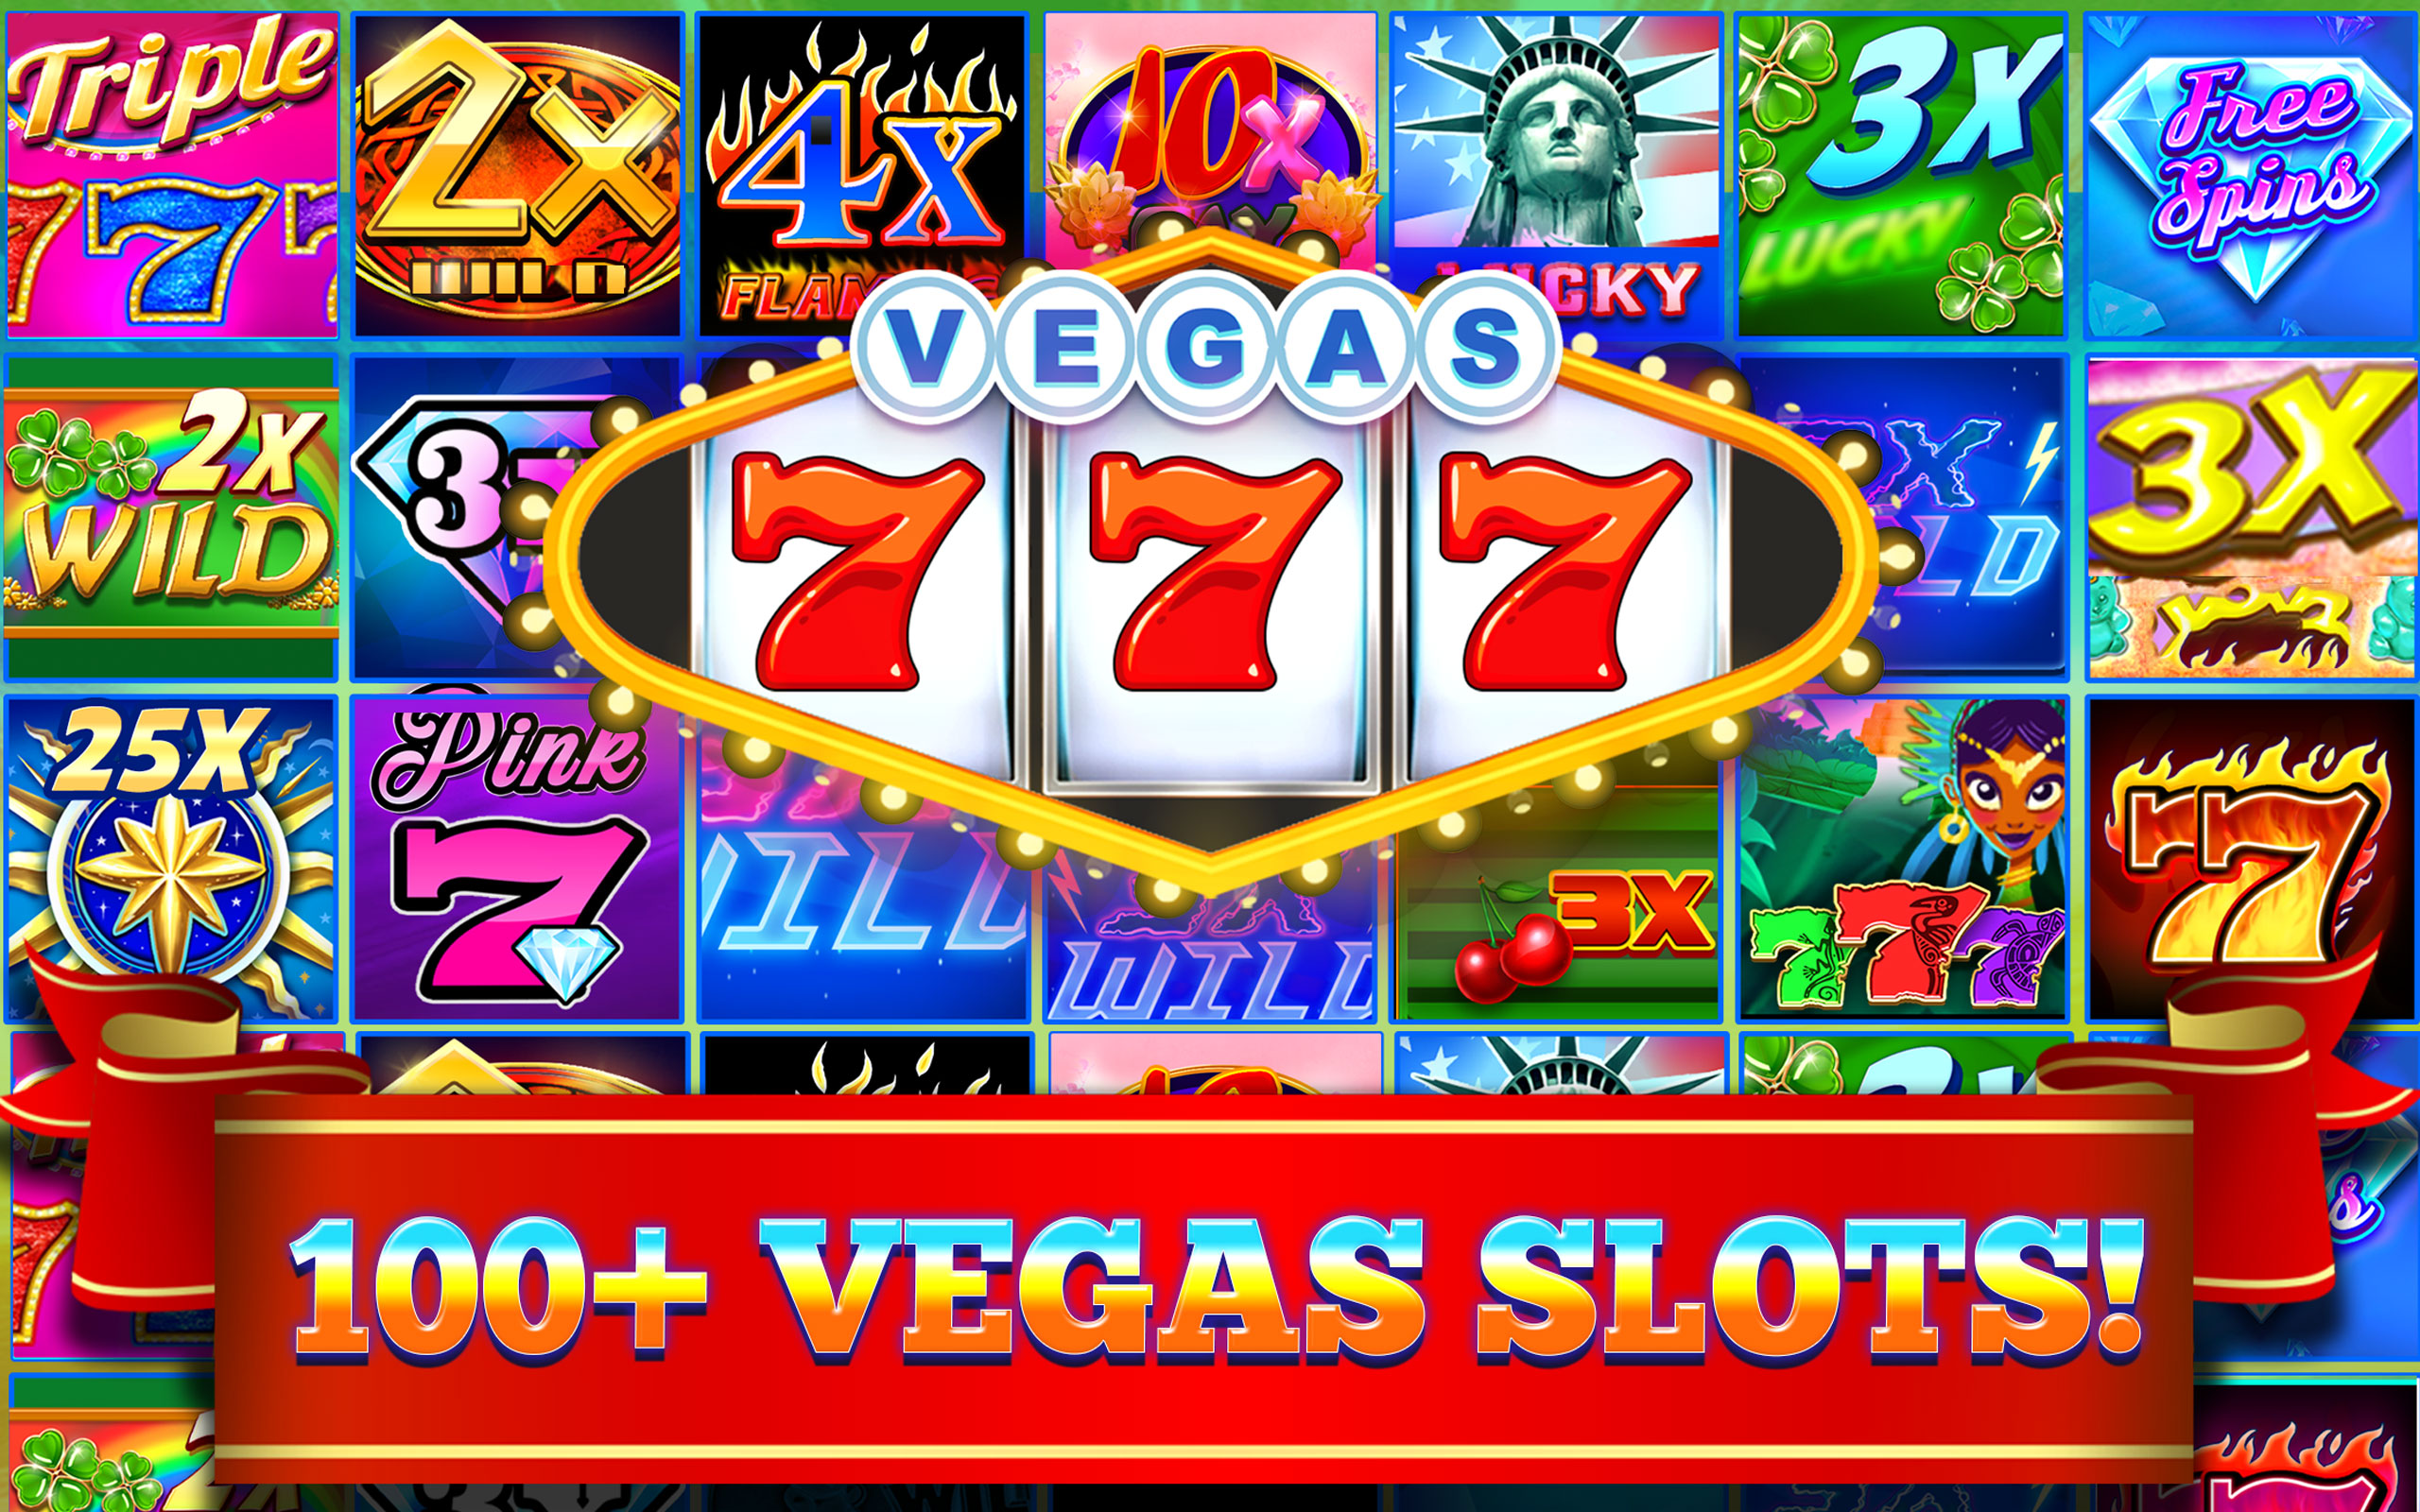 Play Slots Online | Online Casino Games - Betmgm